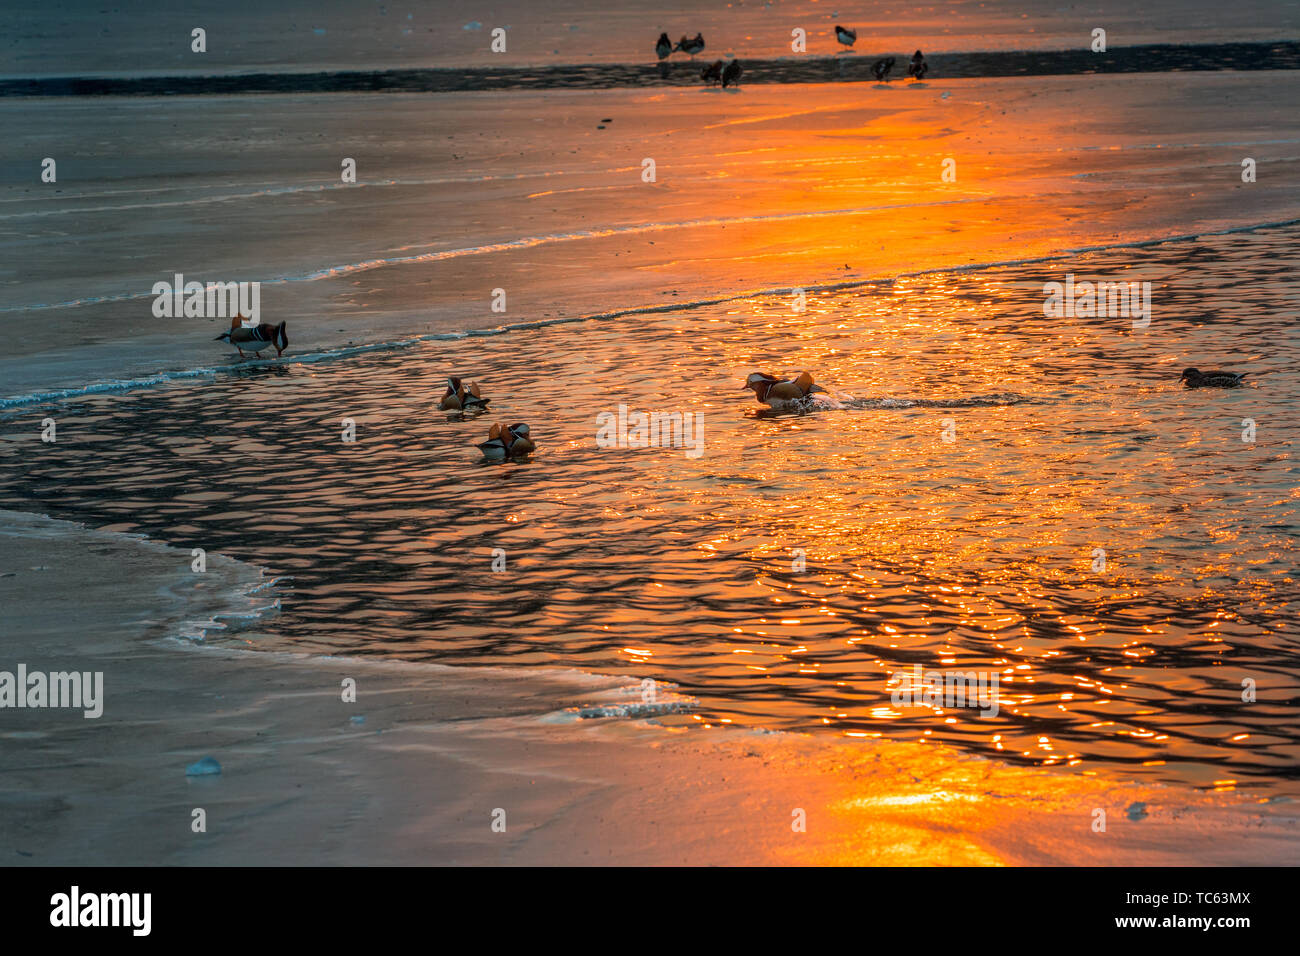 Le lac et la glace sous le soleil du soleil étincelaient comme de l'or fondu, et les canards mandarins sur le lac n'a pas sauter dans l'eau pour chasser joyeusement. Banque D'Images